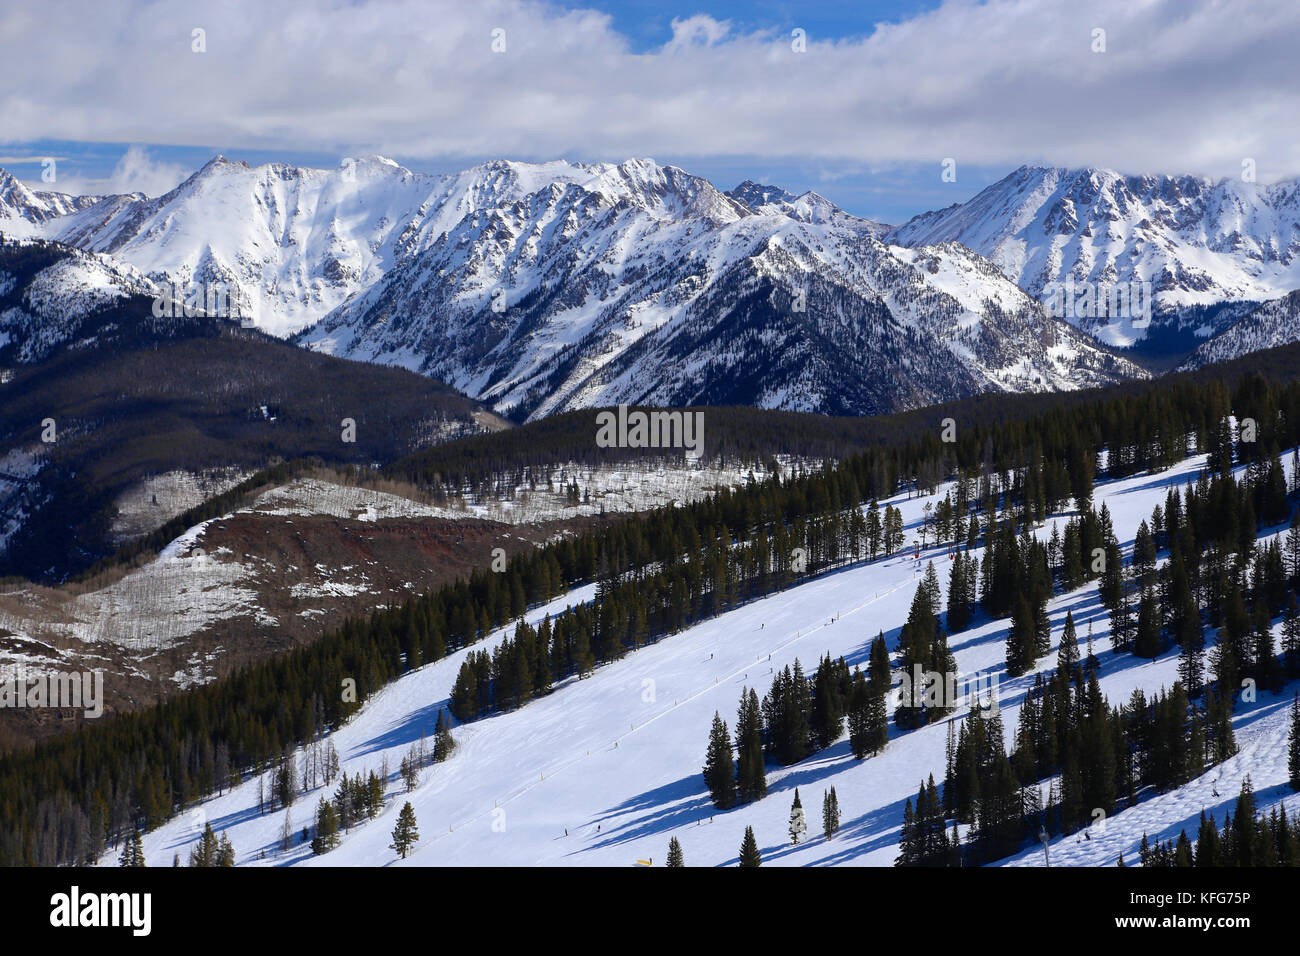 Vail Ski Resort De Invierno En Las Montanas Rocosas De Colorado Fotografia De Stock Alamy